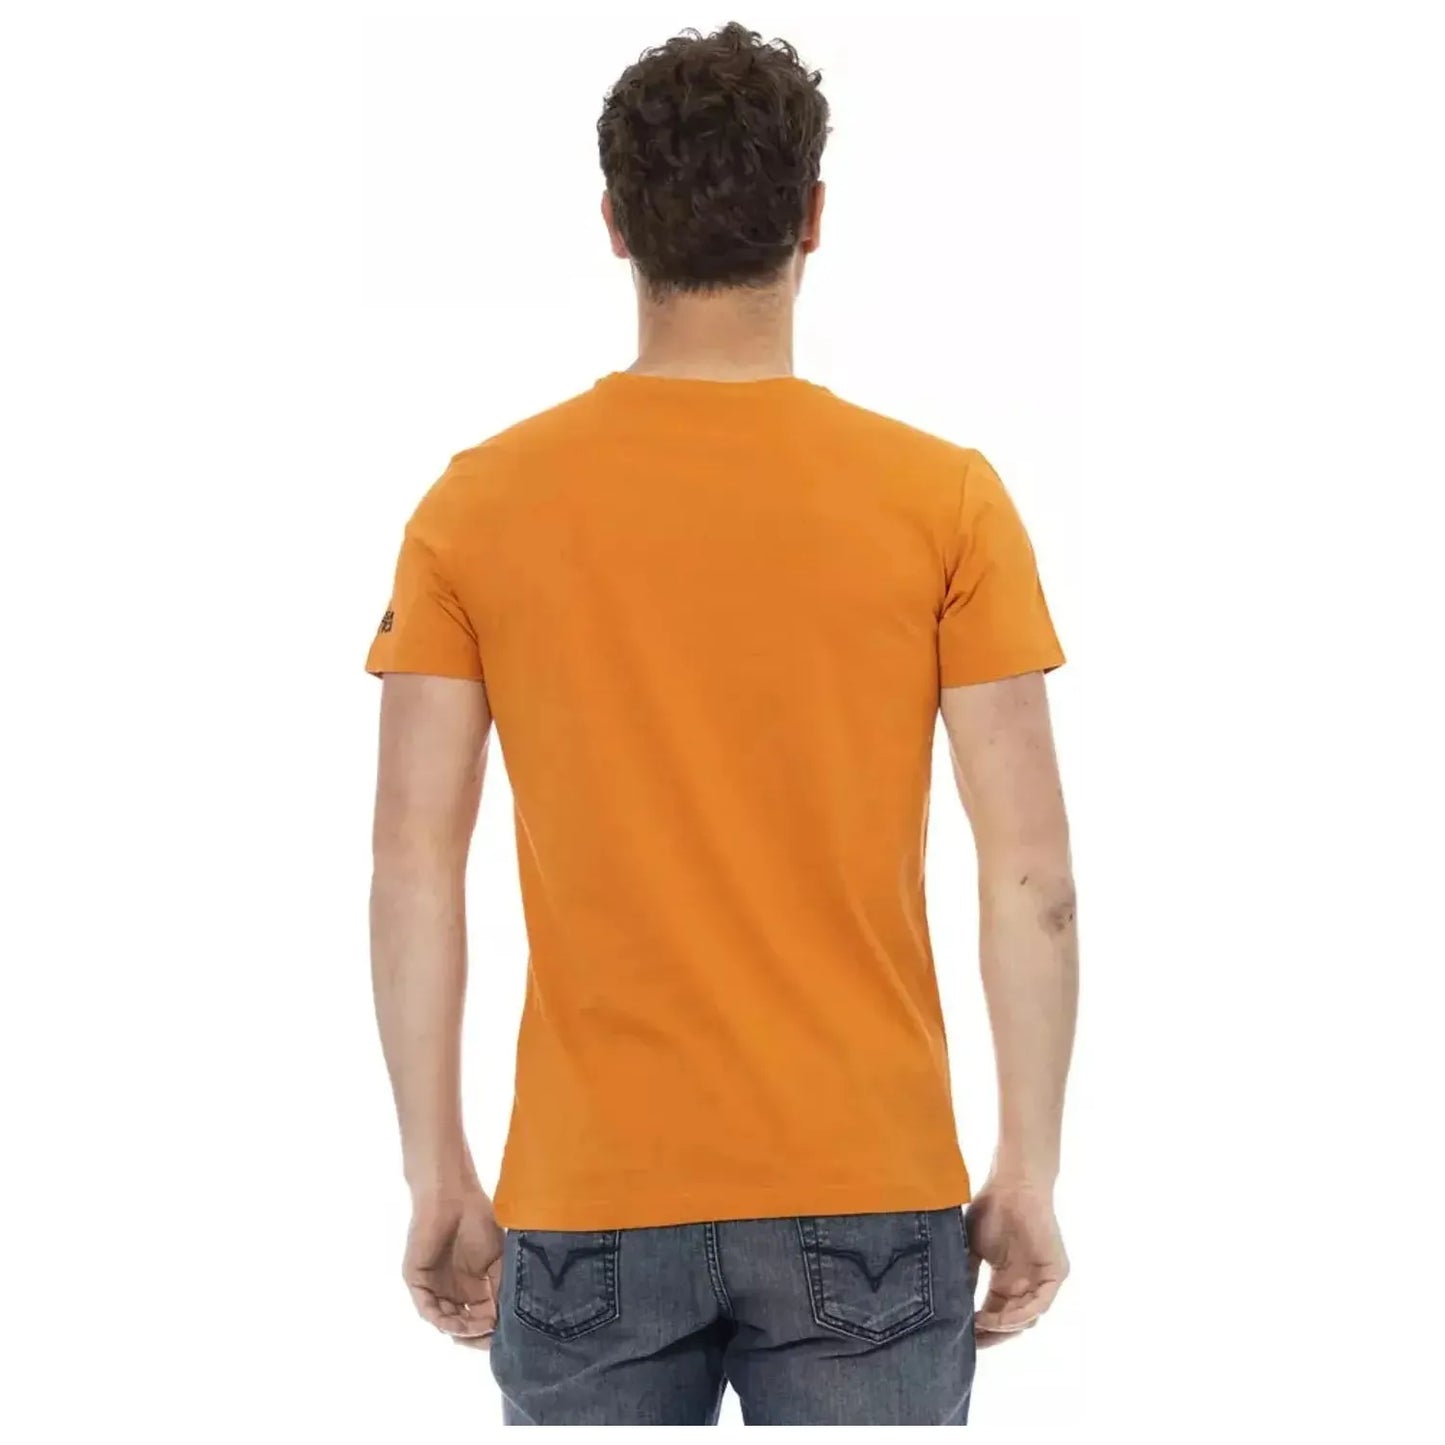 Trussardi Action Chic Orange Short Sleeve Round Neck Tee orange-cotton-t-shirt-26 product-22743-2126305042-24-63766bf3-fee.webp